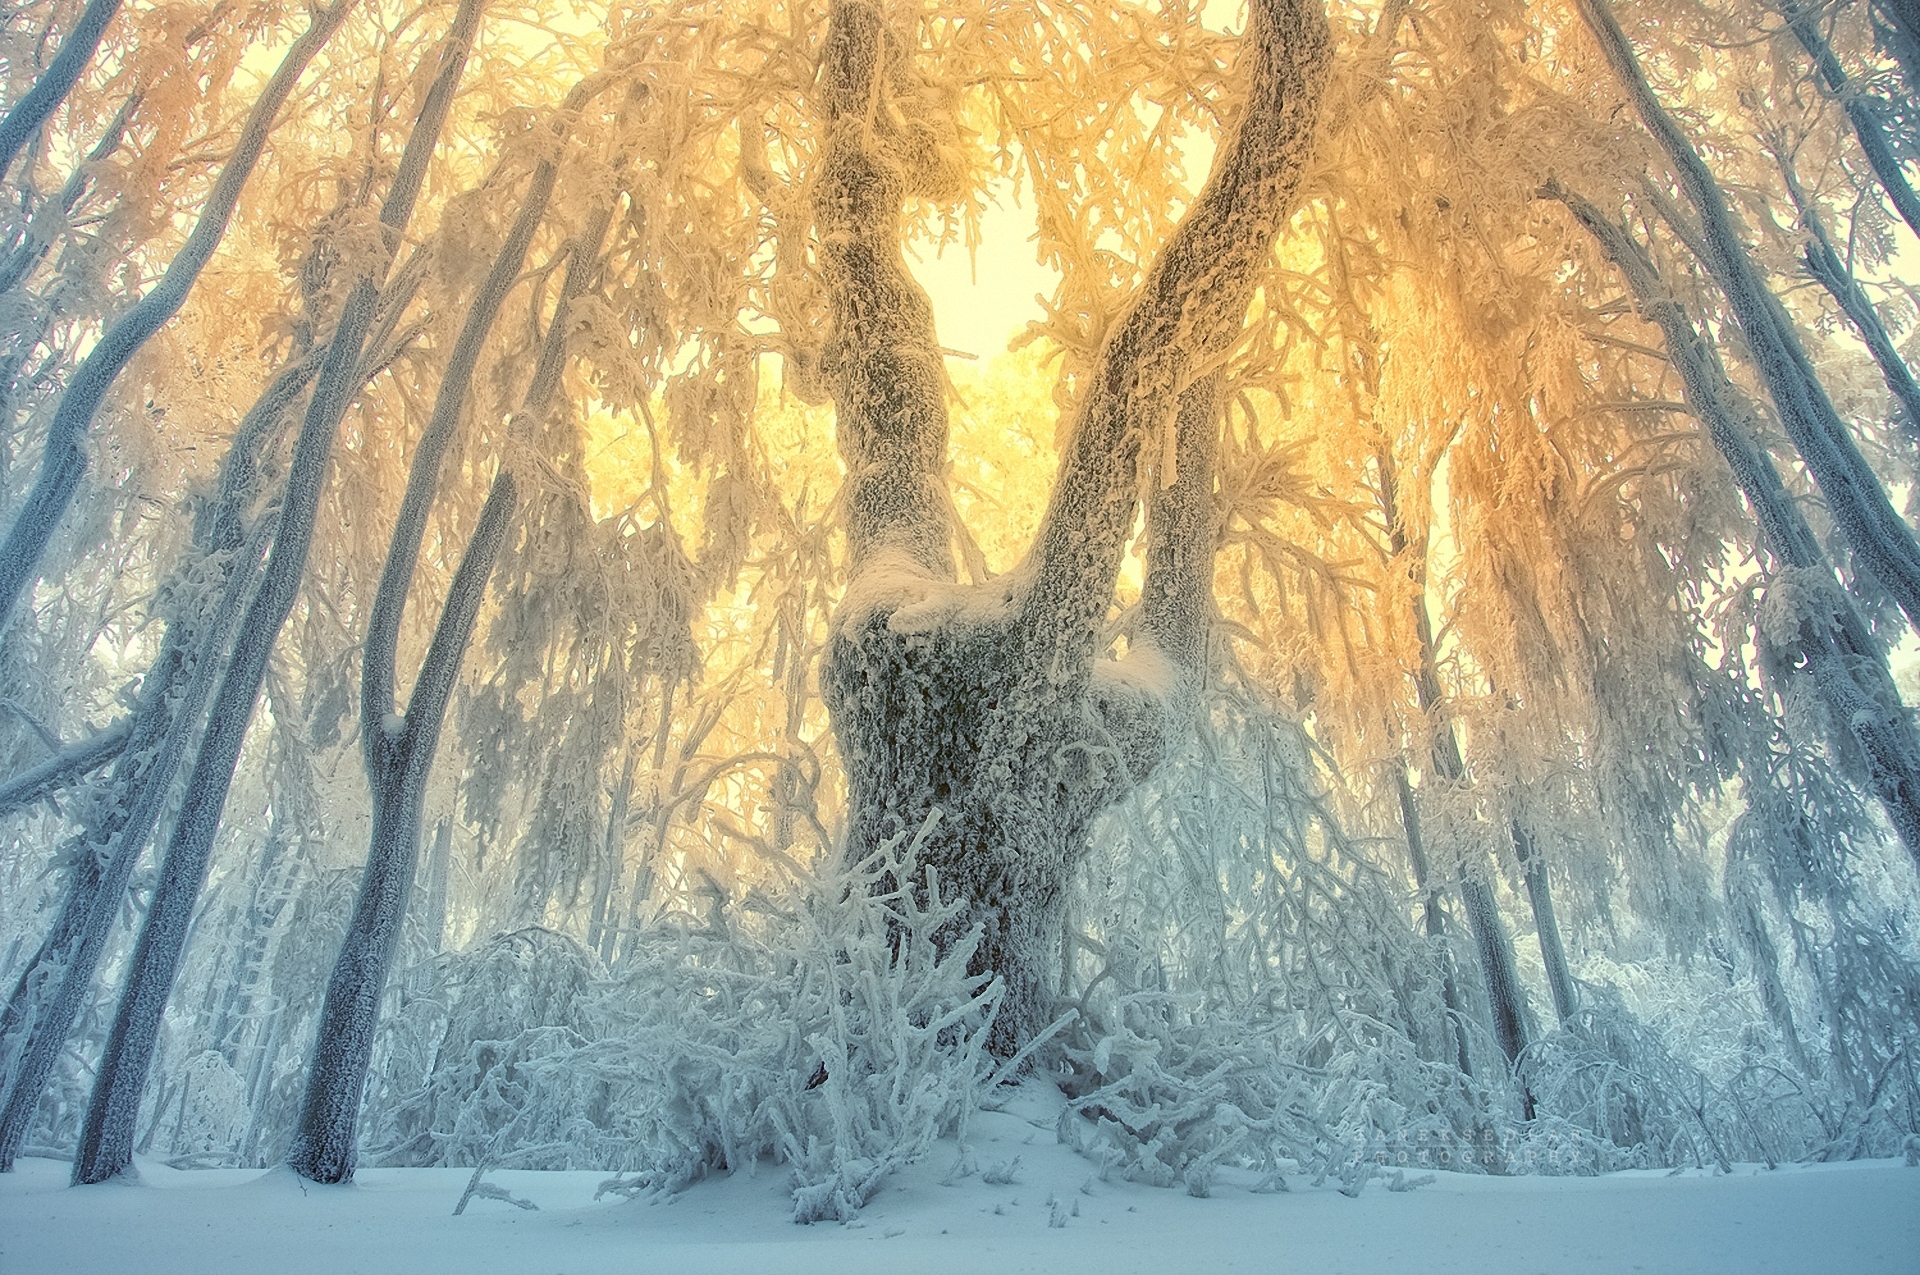 Фф и в морозном лесу я навеки. Сказочный зимний лес. Иней на деревьях. Зимний лес солнце. Необычные зимние пейзажи.